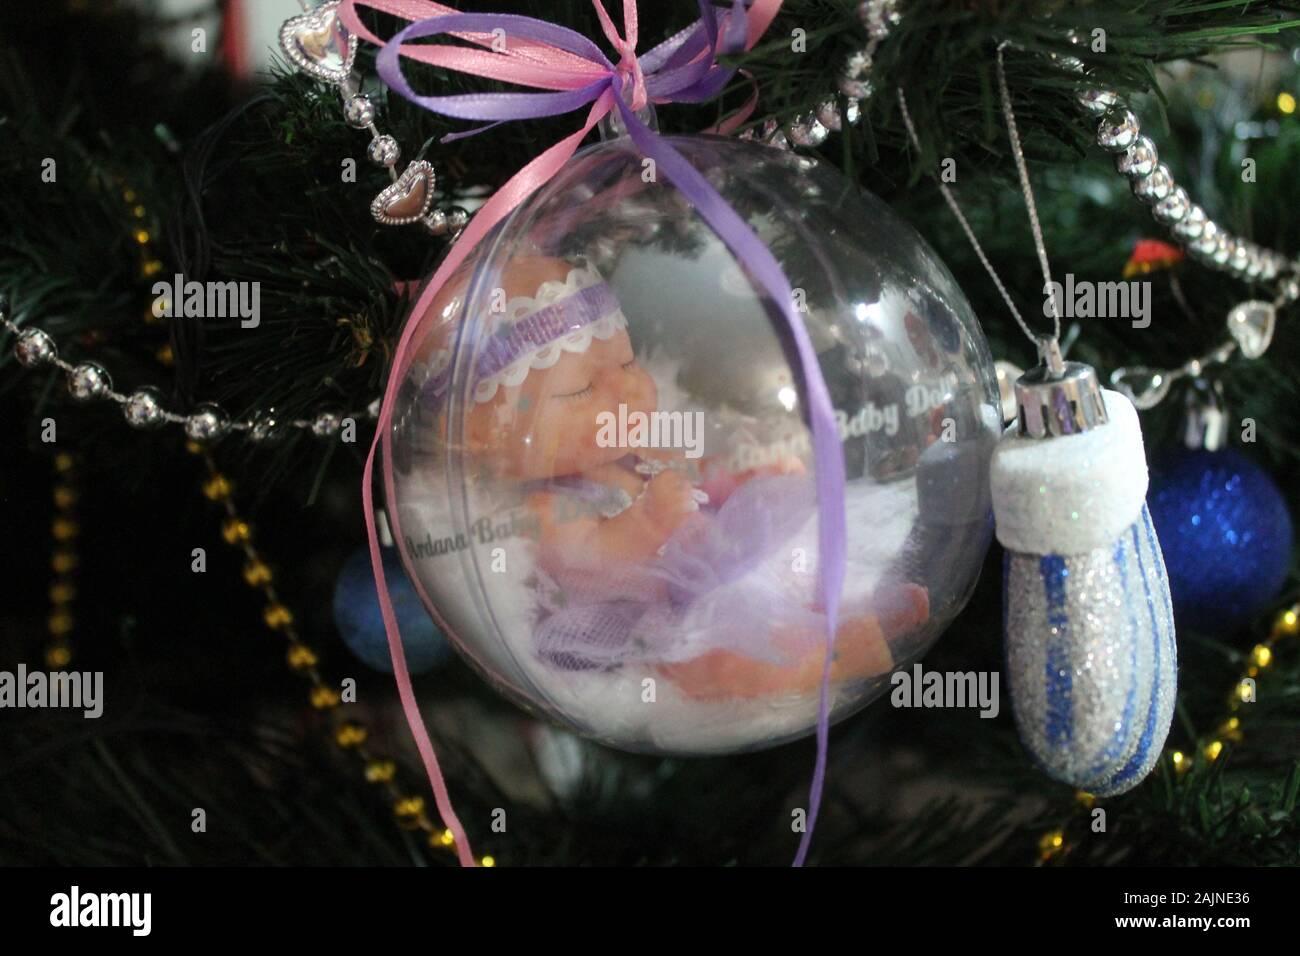 Little baby doll nella sfera di cristallo con nastri colorati per la decorazione sulla vacanza invernale o regalo per ragazze Foto Stock